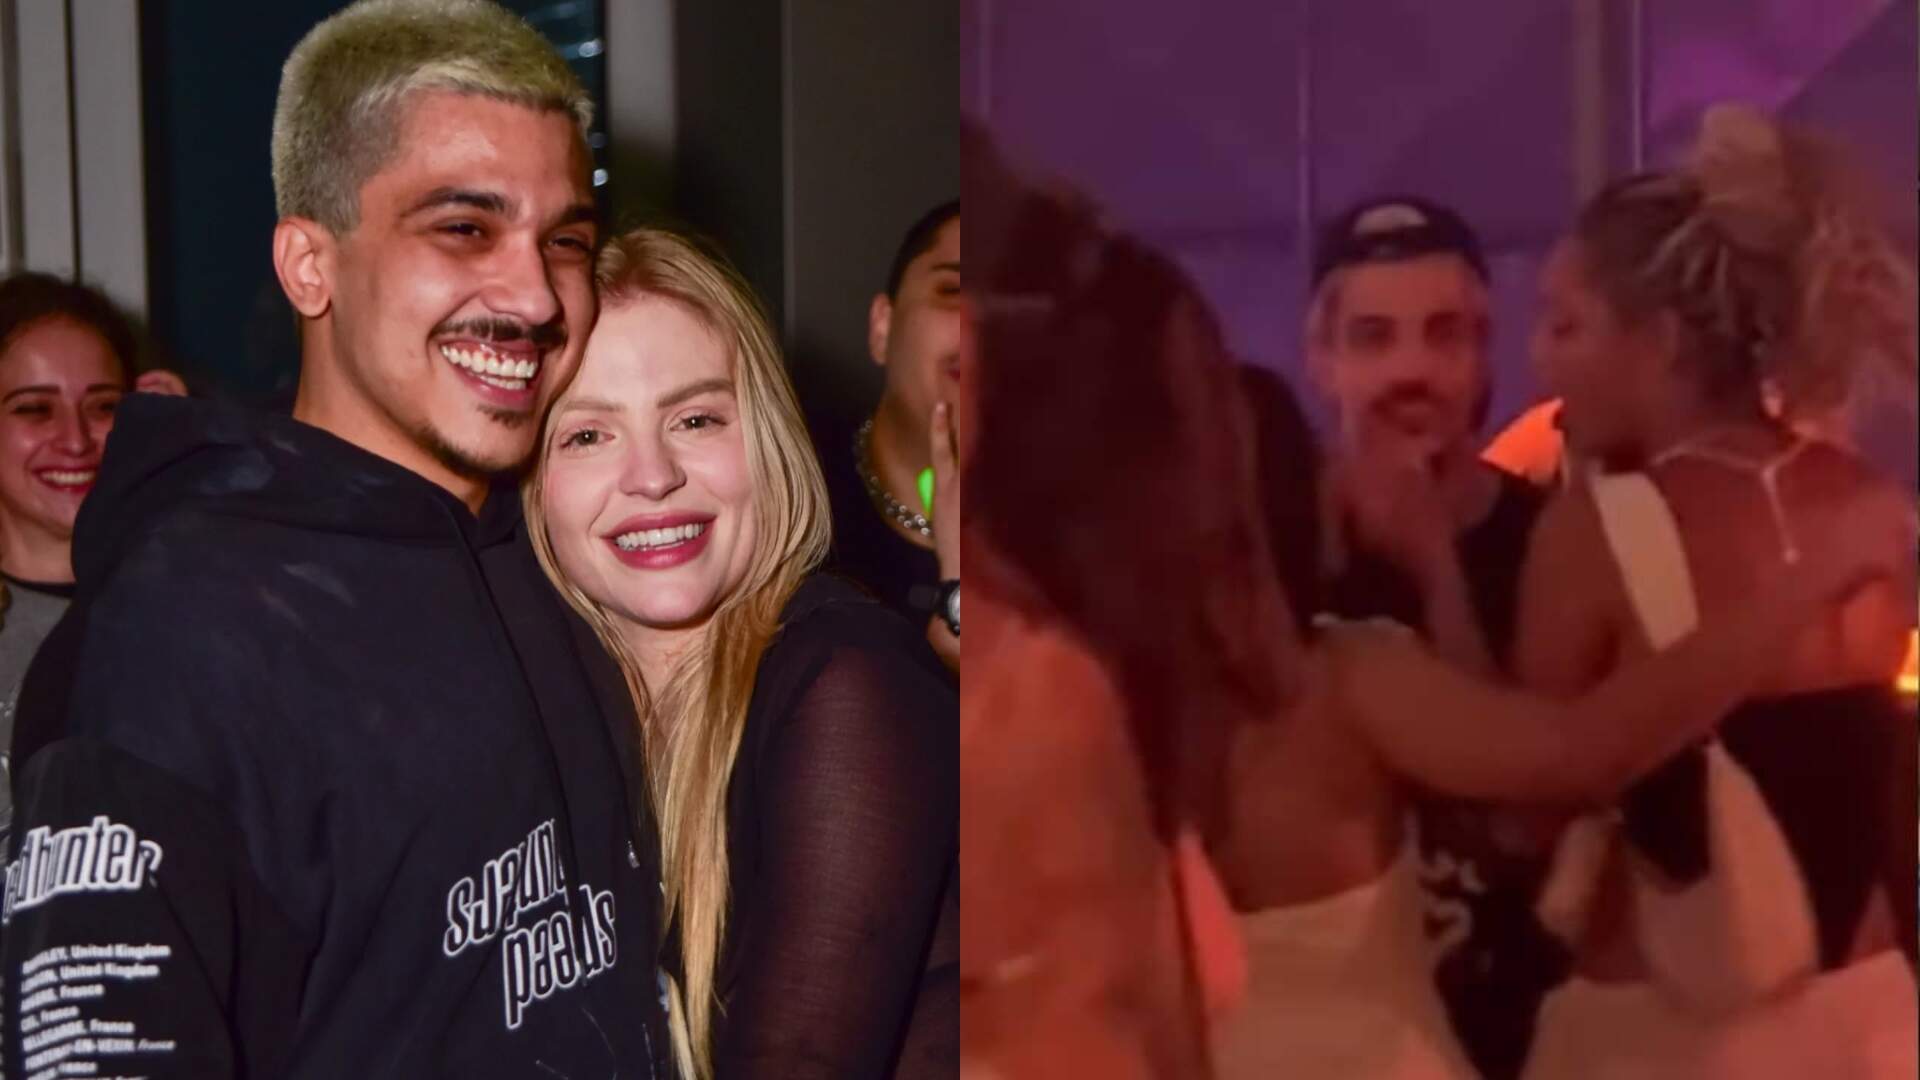 Vídeo de Chico Moedas beijando outra mulher na balada ao som de Luísa Sonza viraliza na web - Metropolitana FM